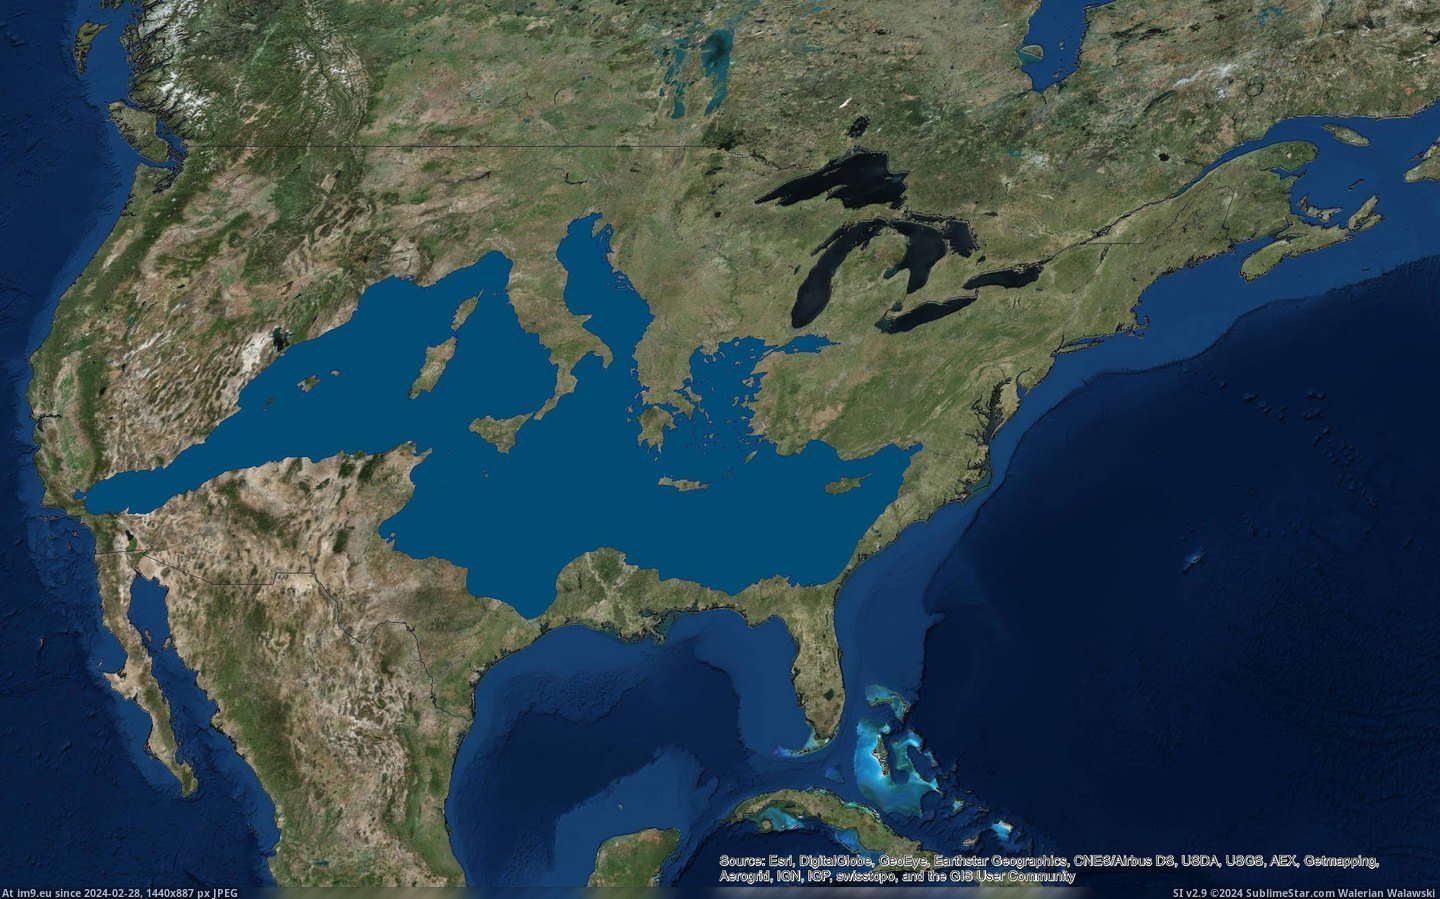 #States #Sea #Mediterranean #United [Mapporn] If the Mediterranean Sea were in the United States [3023x1875] Pic. (Bild von album My r/MAPS favs))